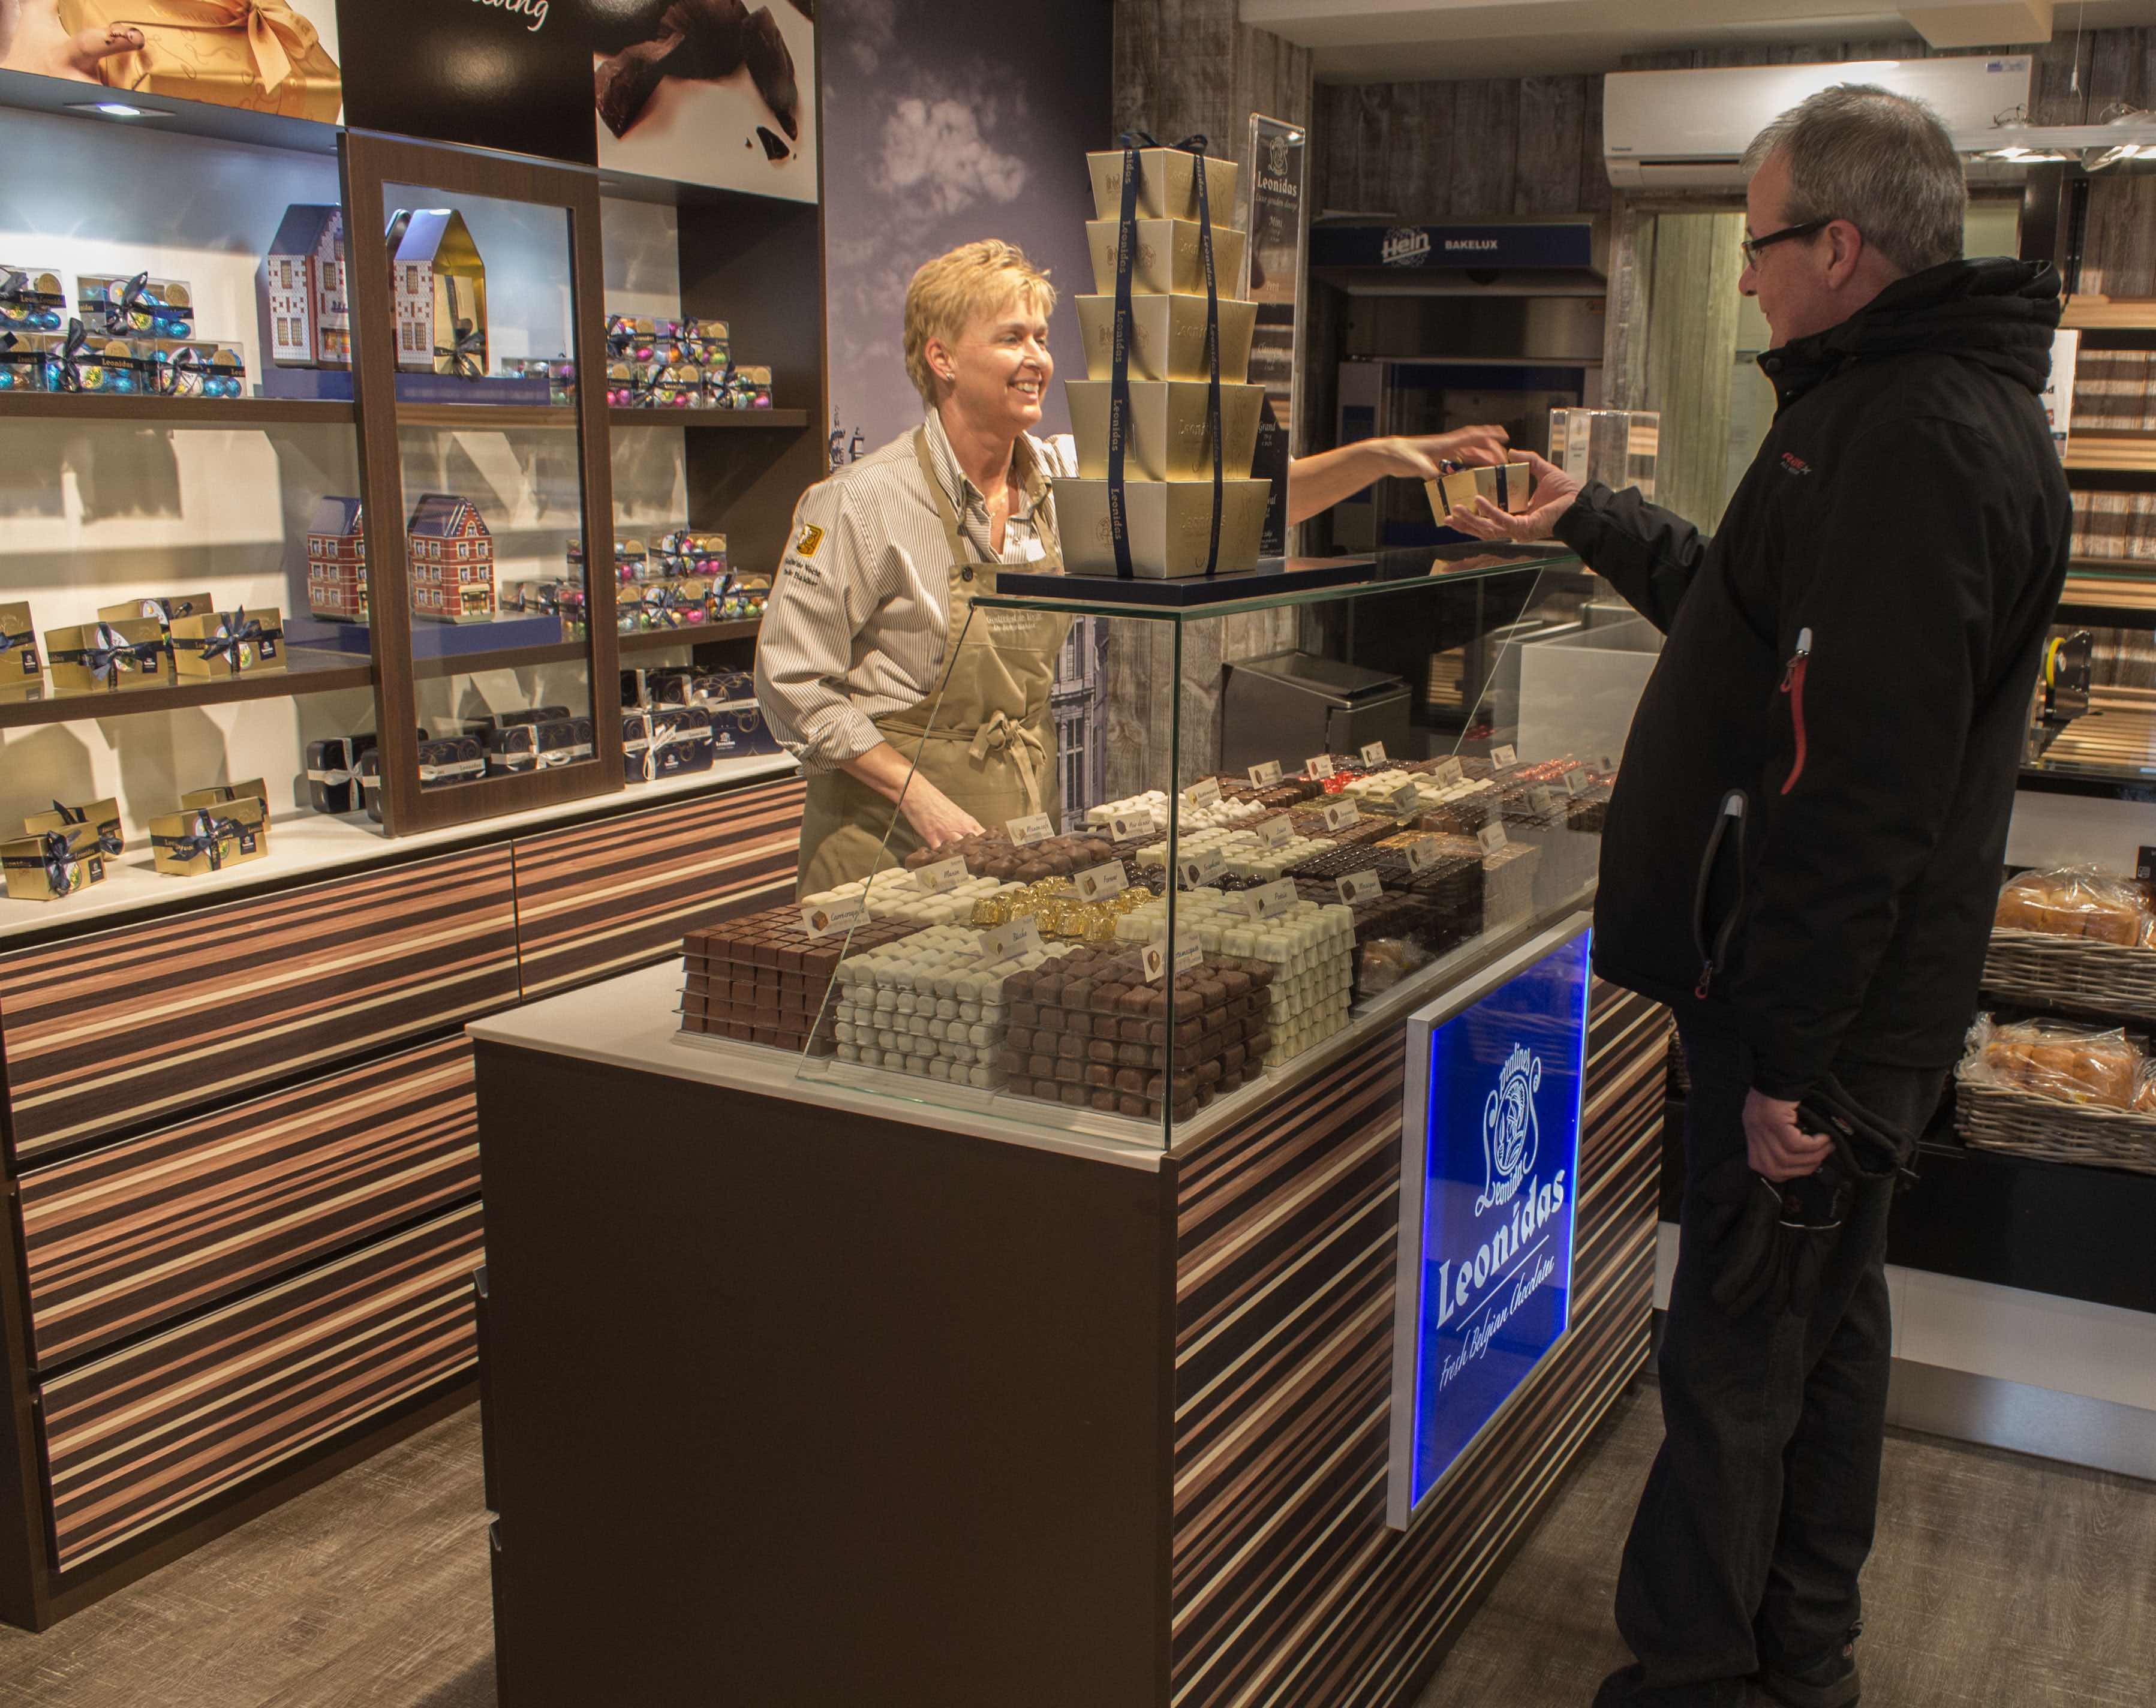 Bakkersspeciaalzaak De Vocht in Eindhoven omarmt concept van beroemde Belgische chocolatier Leonidas. Bron: franchiseFormules.NL